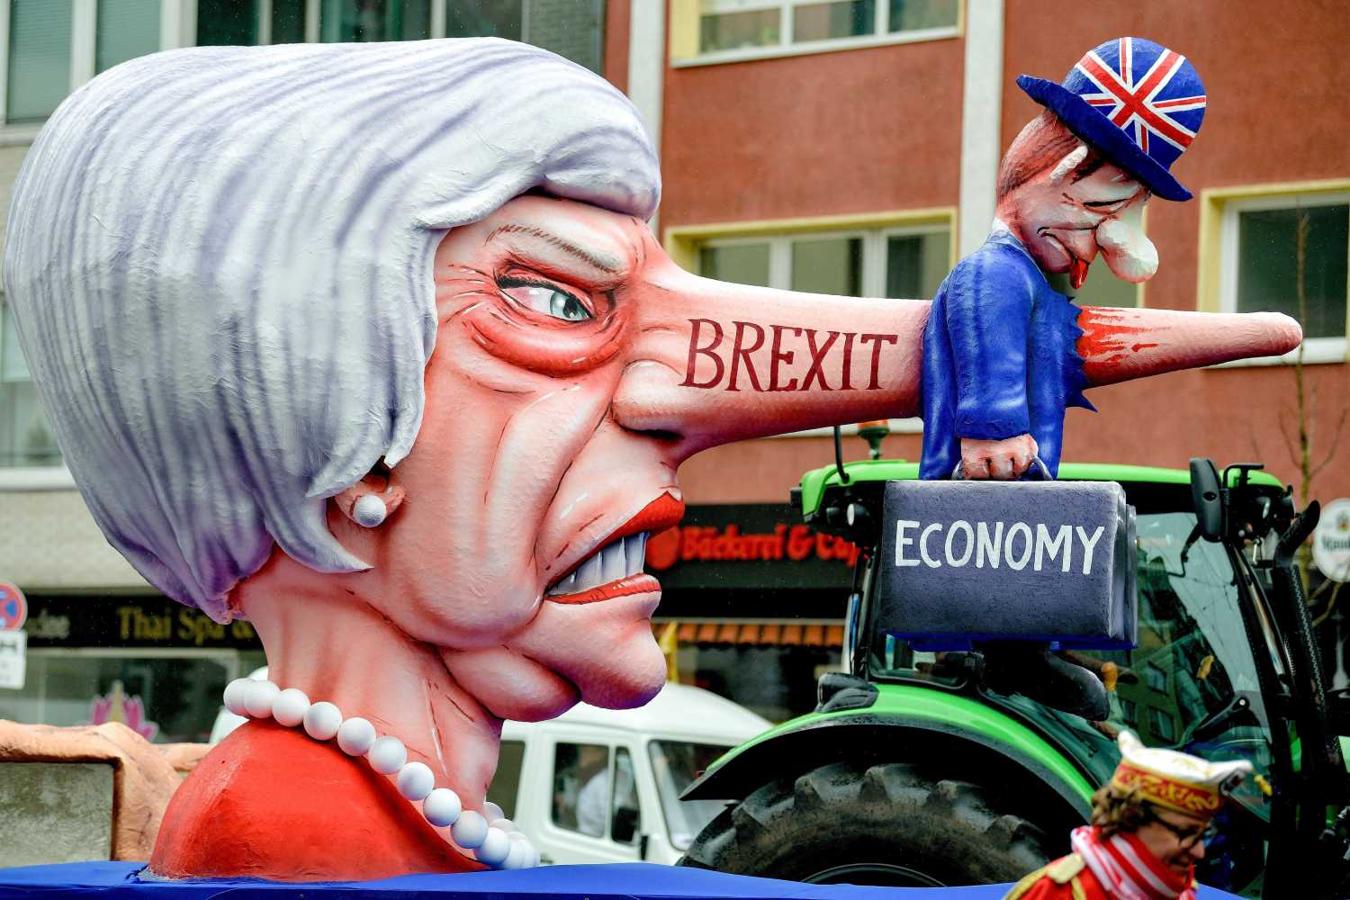 Carroza con una imagen paródica de la primera ministra británica, Theresa May, asesinando a la economía británica con mentiras, en el desfile anual del "Lunes de la rosa" en Düsseldorf (Alemania)